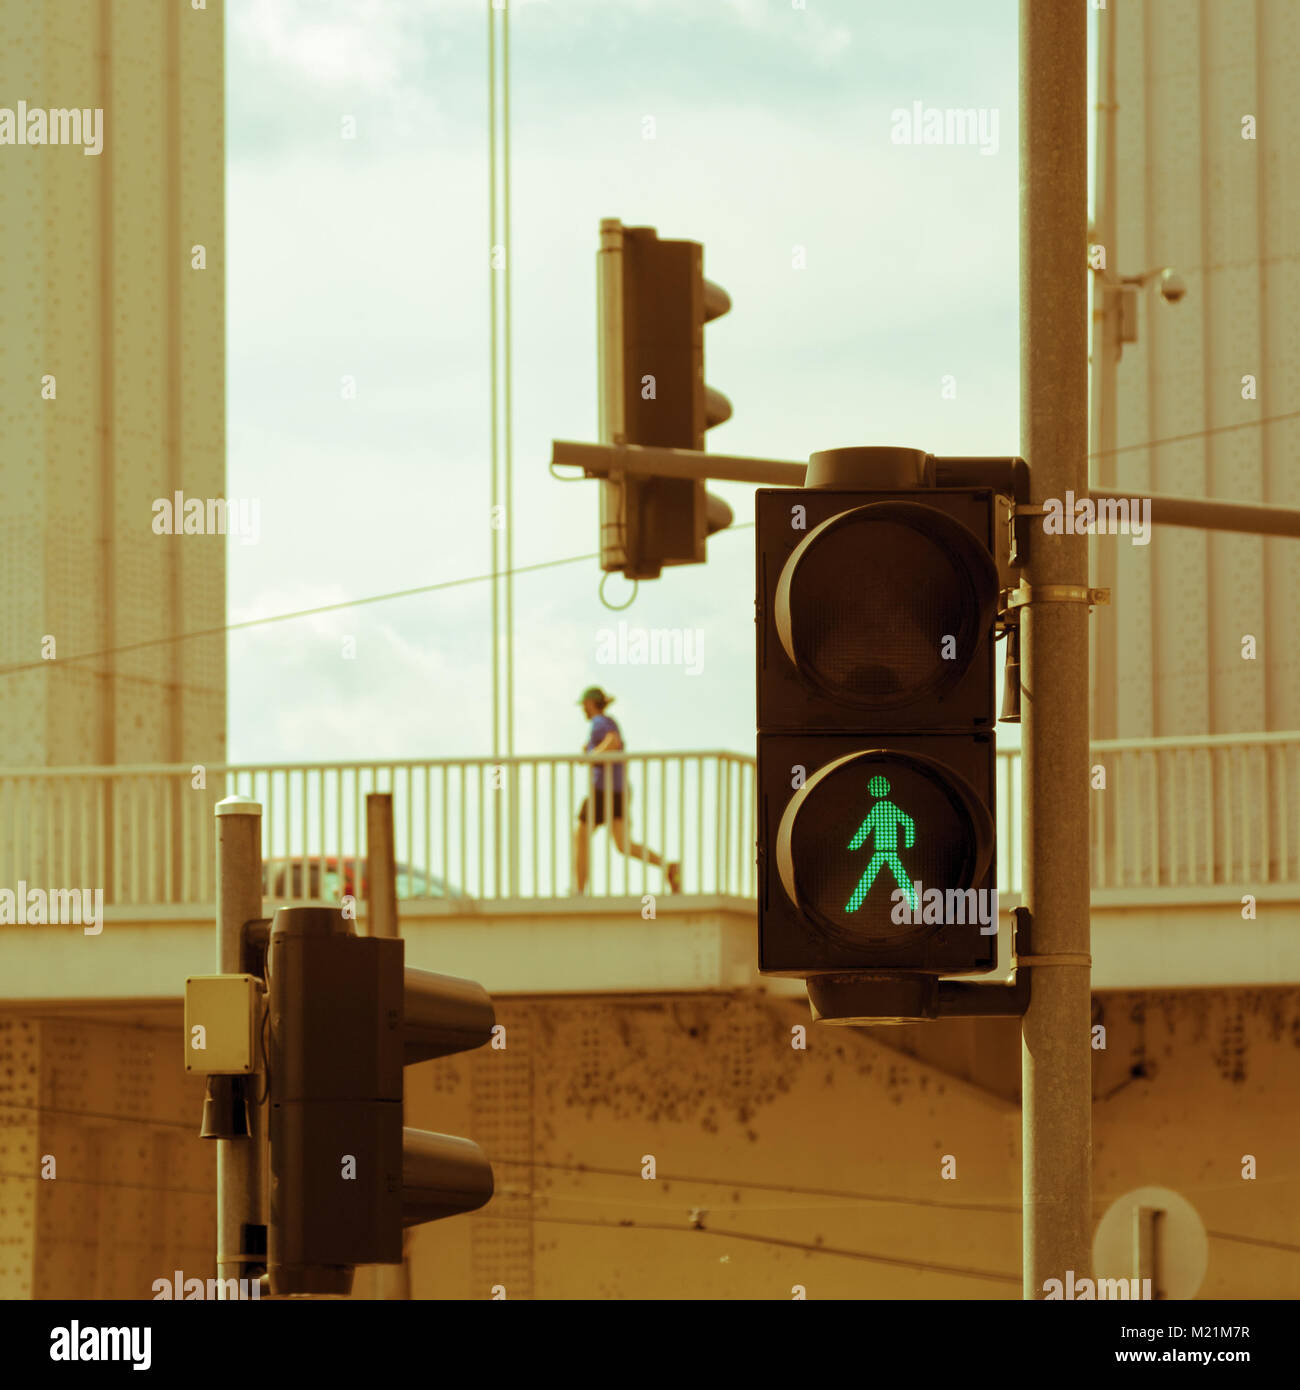 Persona solitaria corriendo entre construcciones de hierro y semáforos Foto de stock